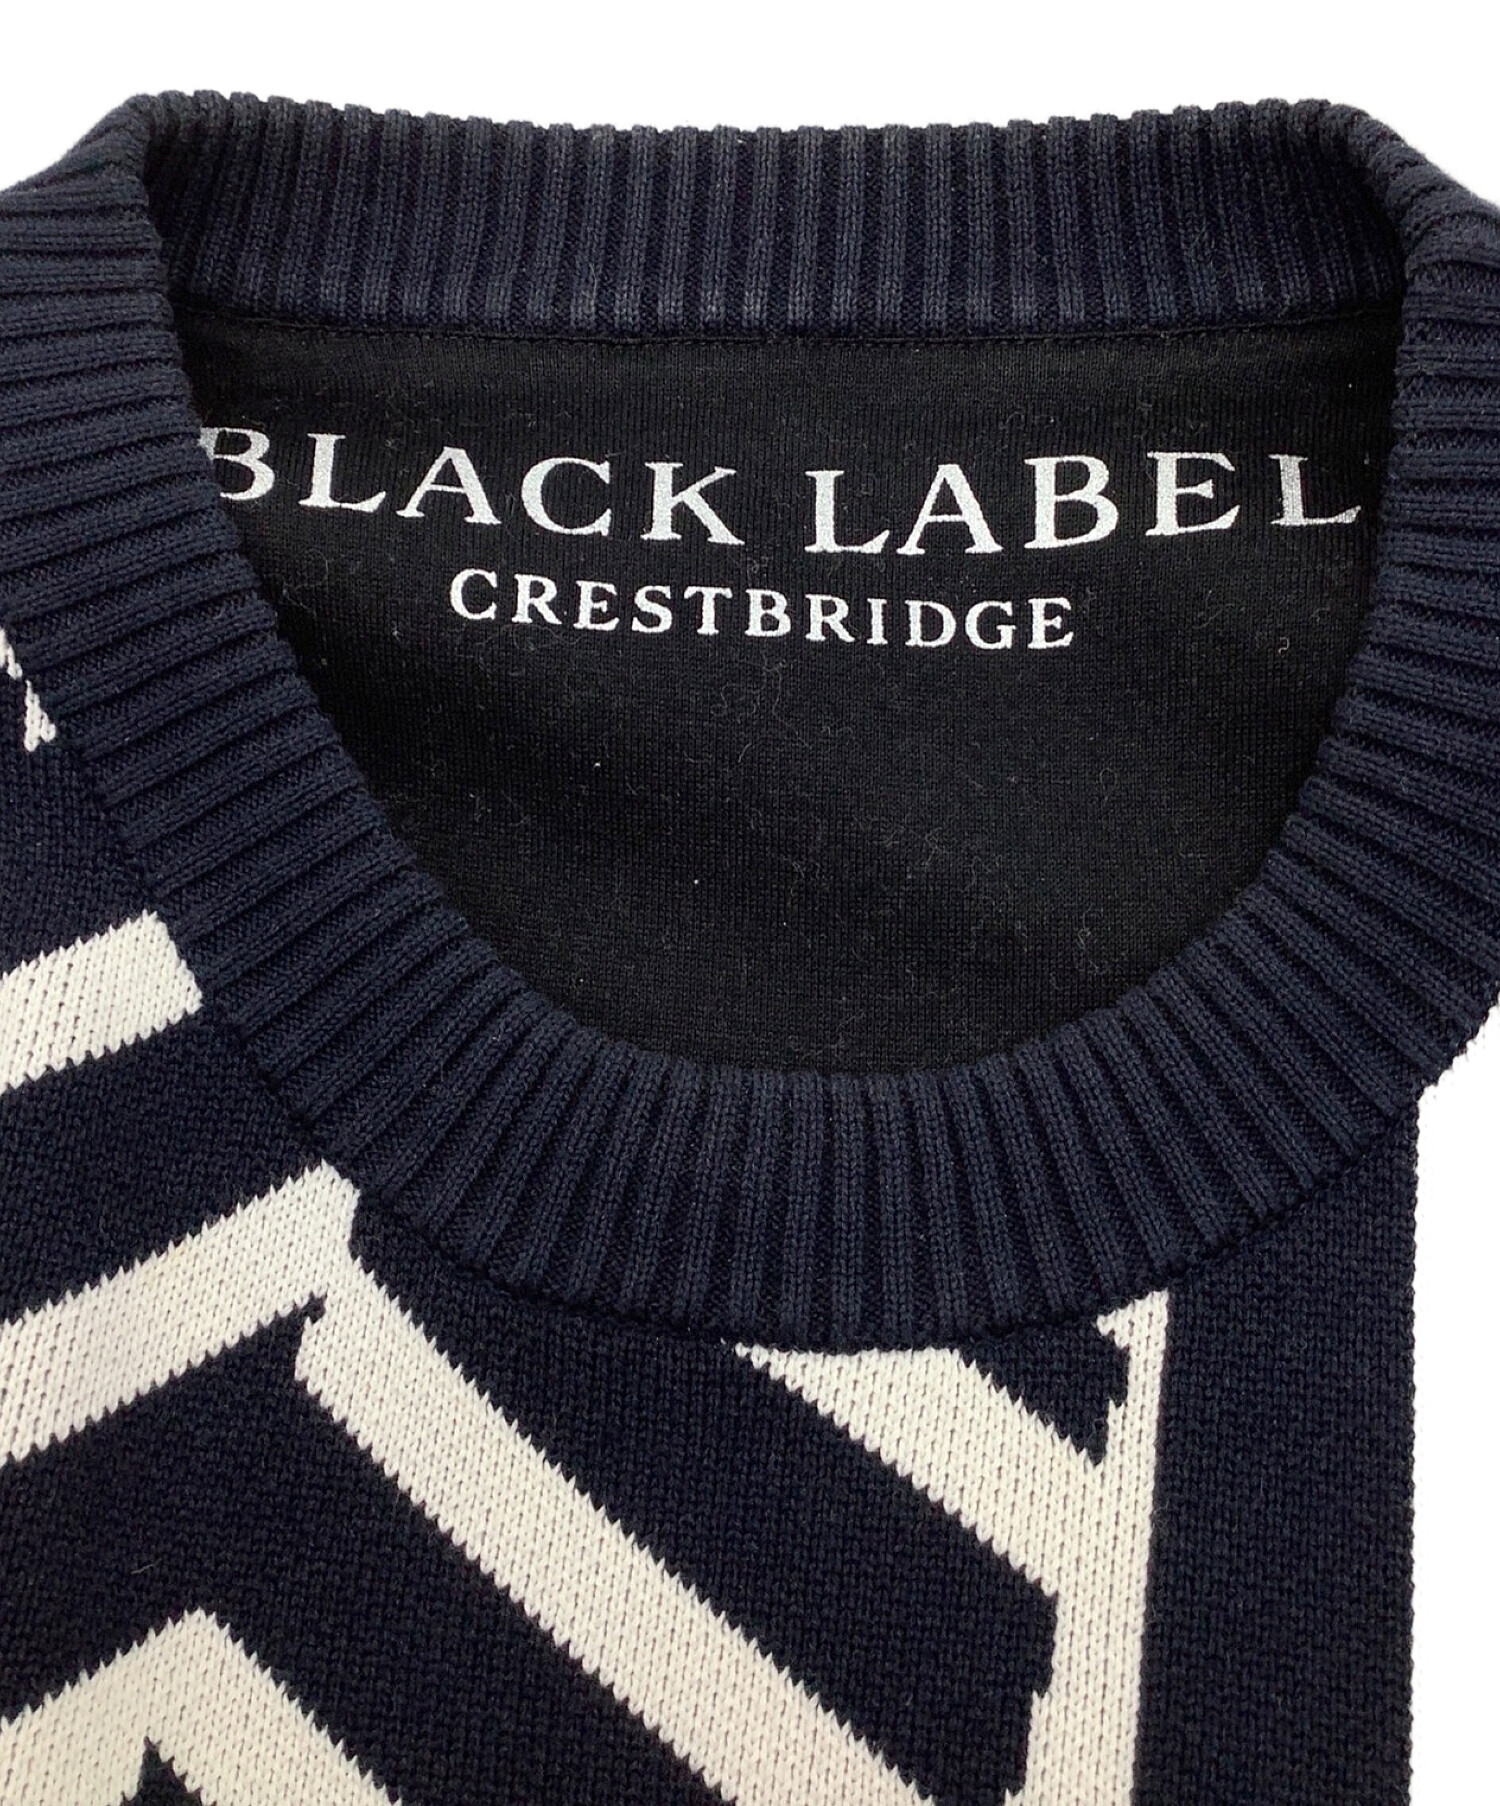 BLACK LABEL CRESTBRIDGE (ブラックレーベル クレストブリッジ) MIHARA YASUHIRO (ミハラヤスヒロ) ニット  ネイビー×ホワイト サイズ:2